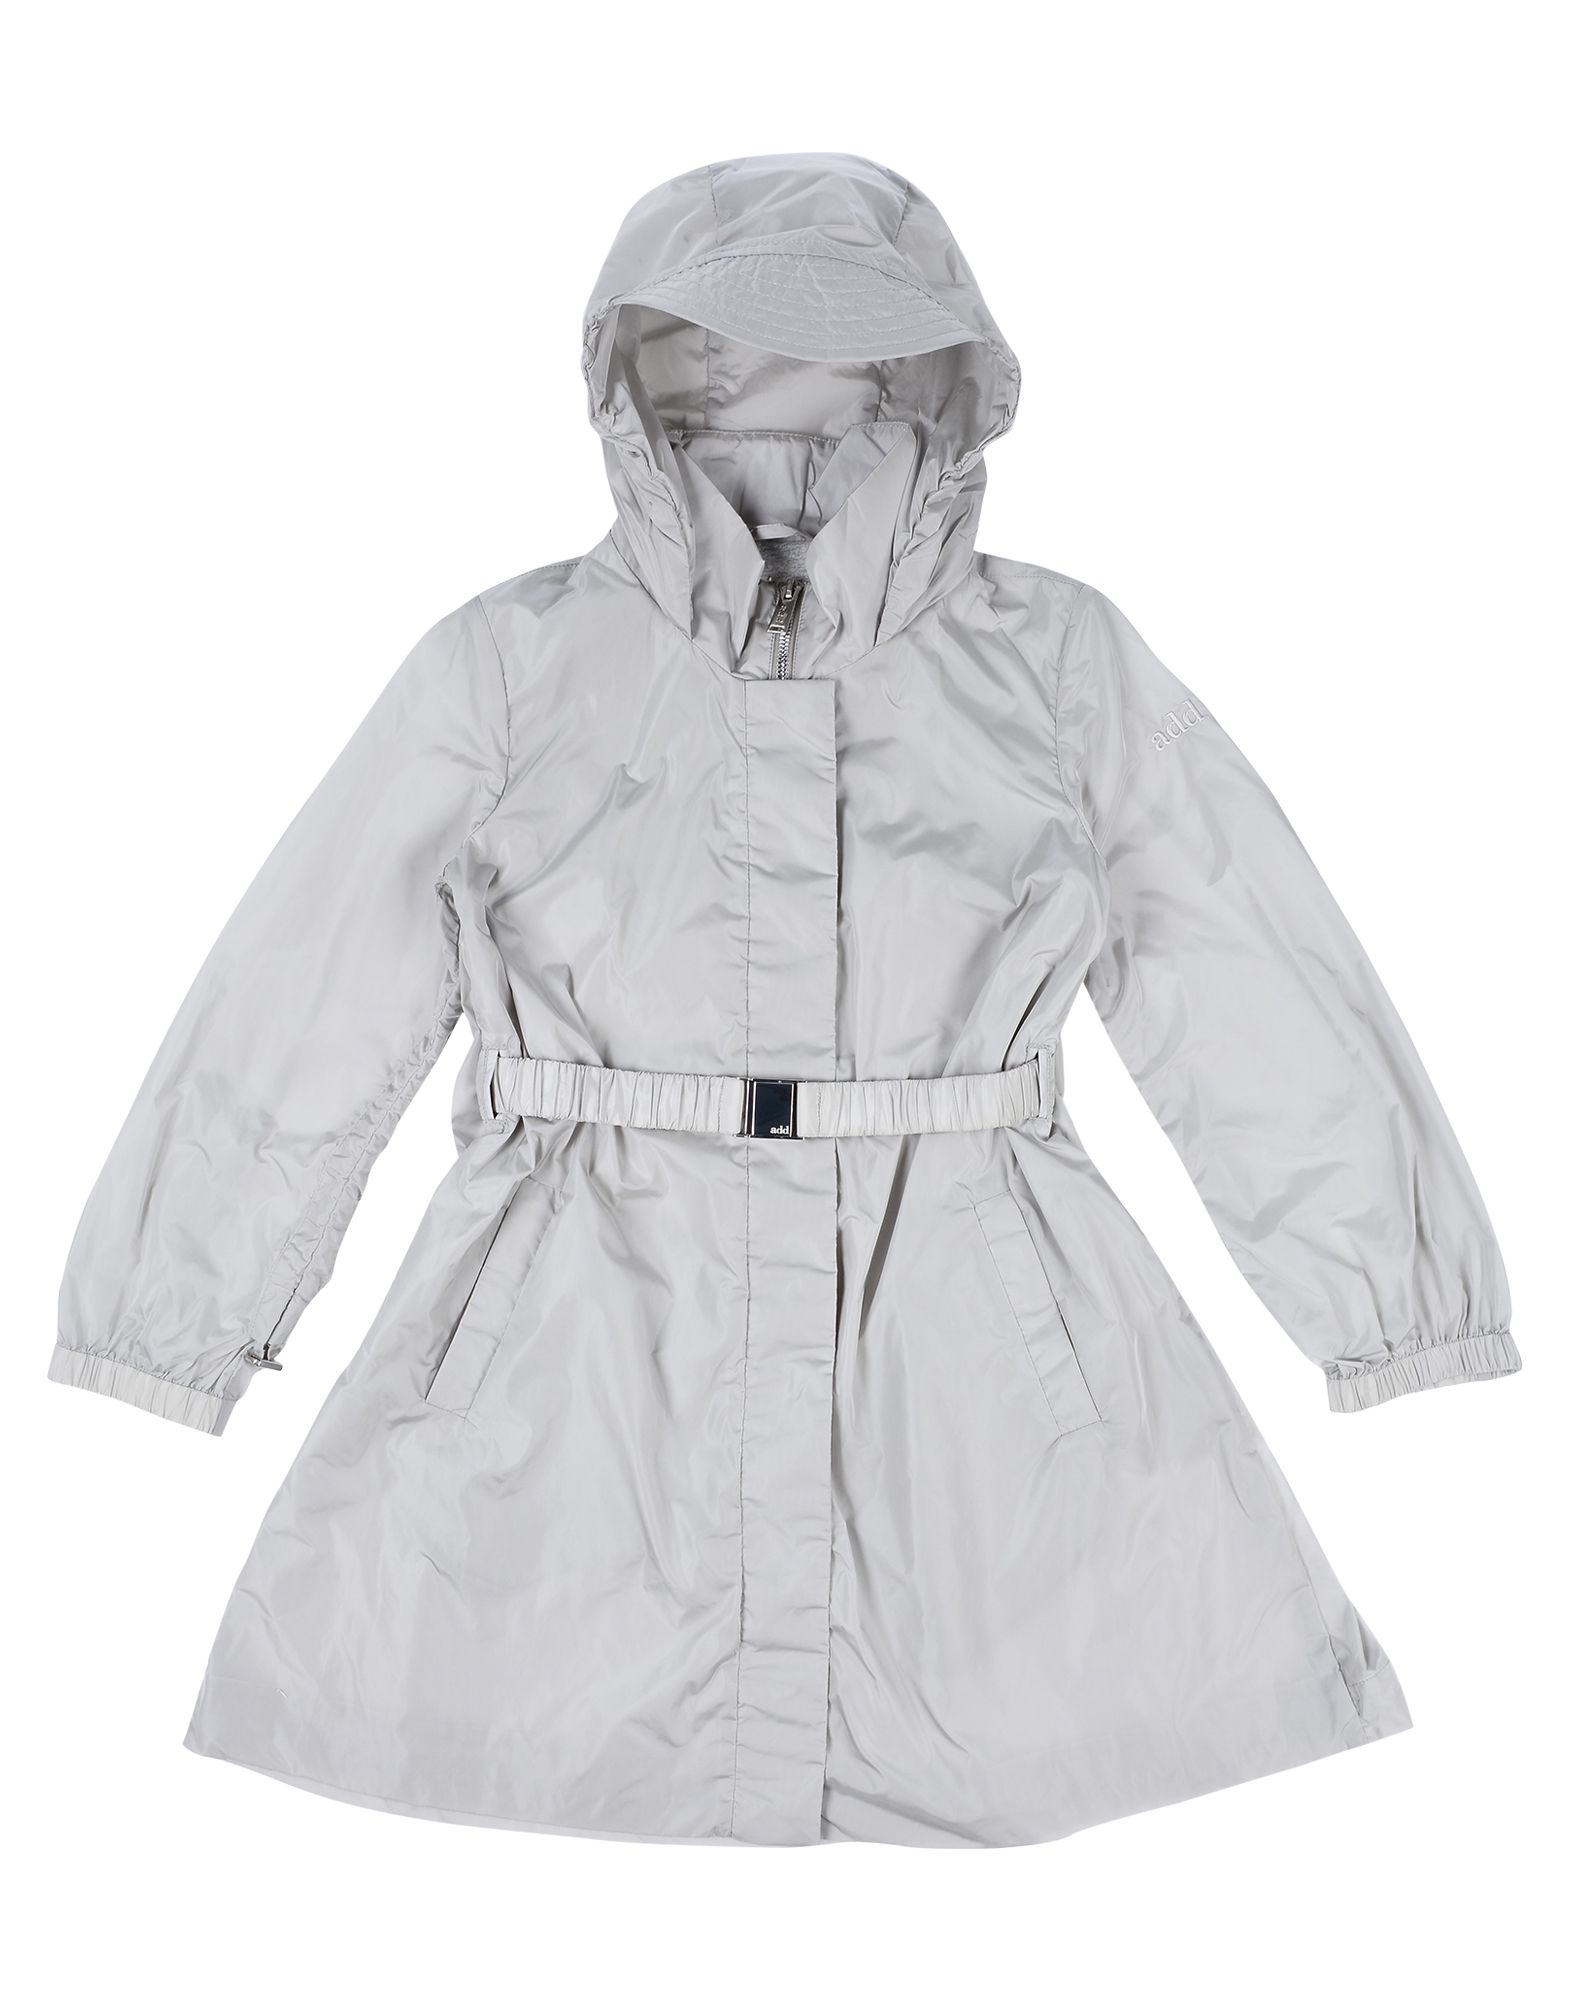 Add Kids' Overcoats In Light Grey